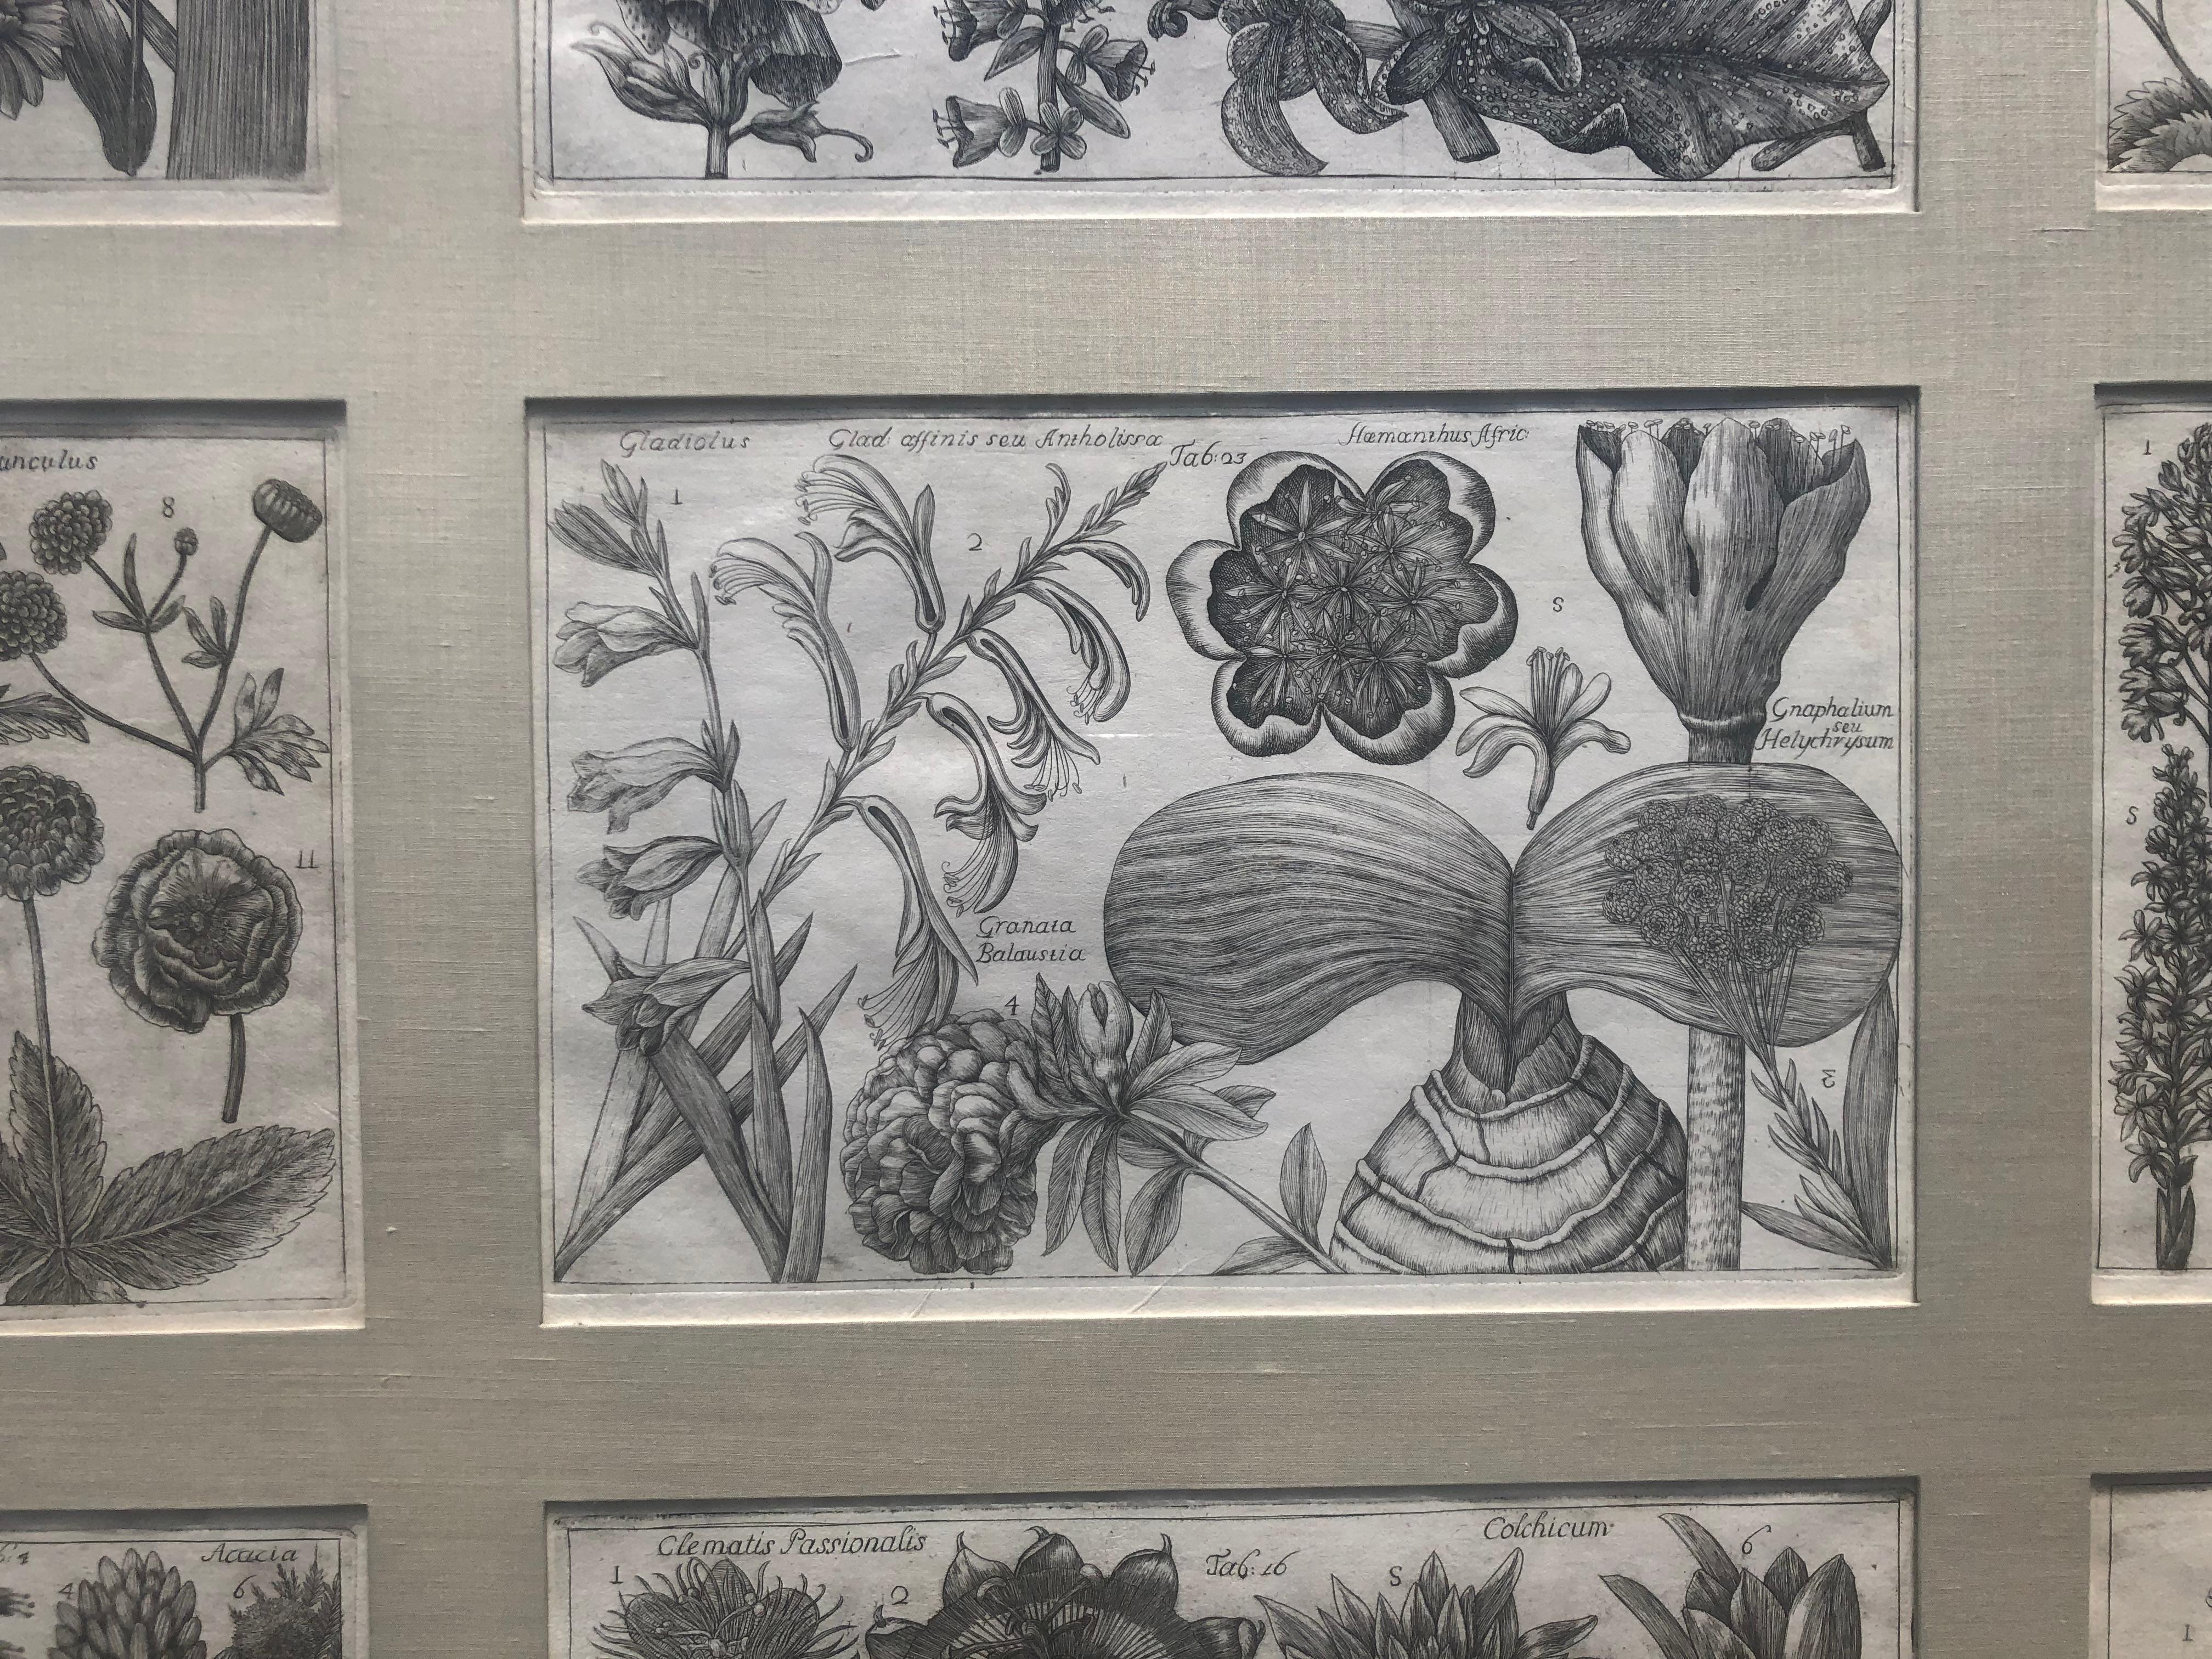  Botanical Engravings From La Natura, e Cultura dei Fiori  - Print by Filippo Arena 